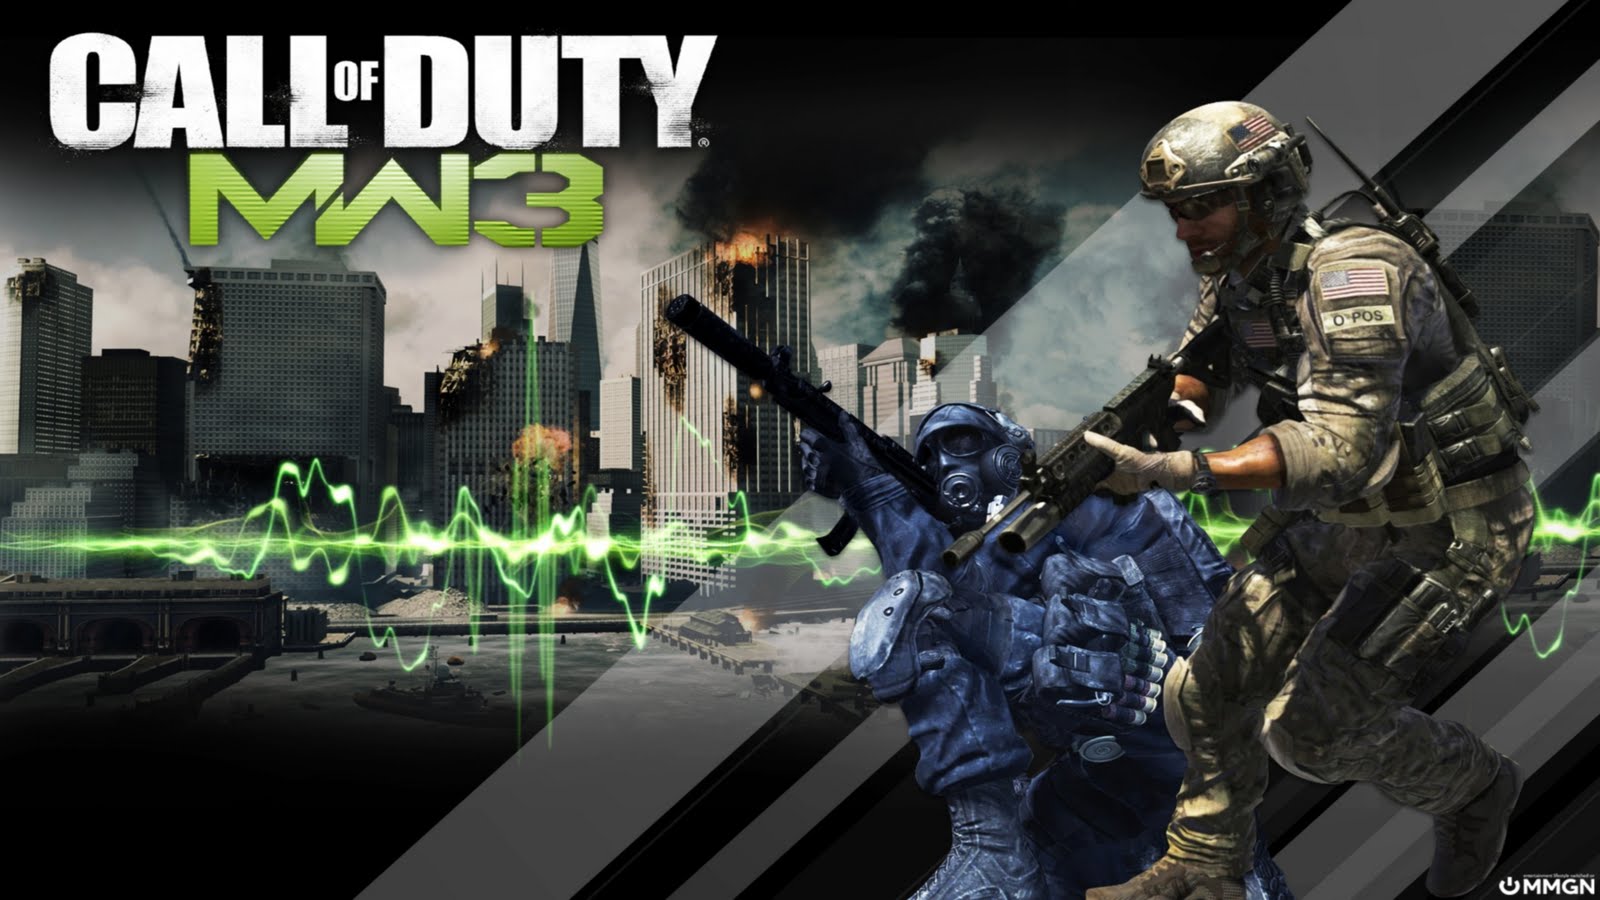 Call of Duty: Modern Warfare 3 Wallpaper In HD